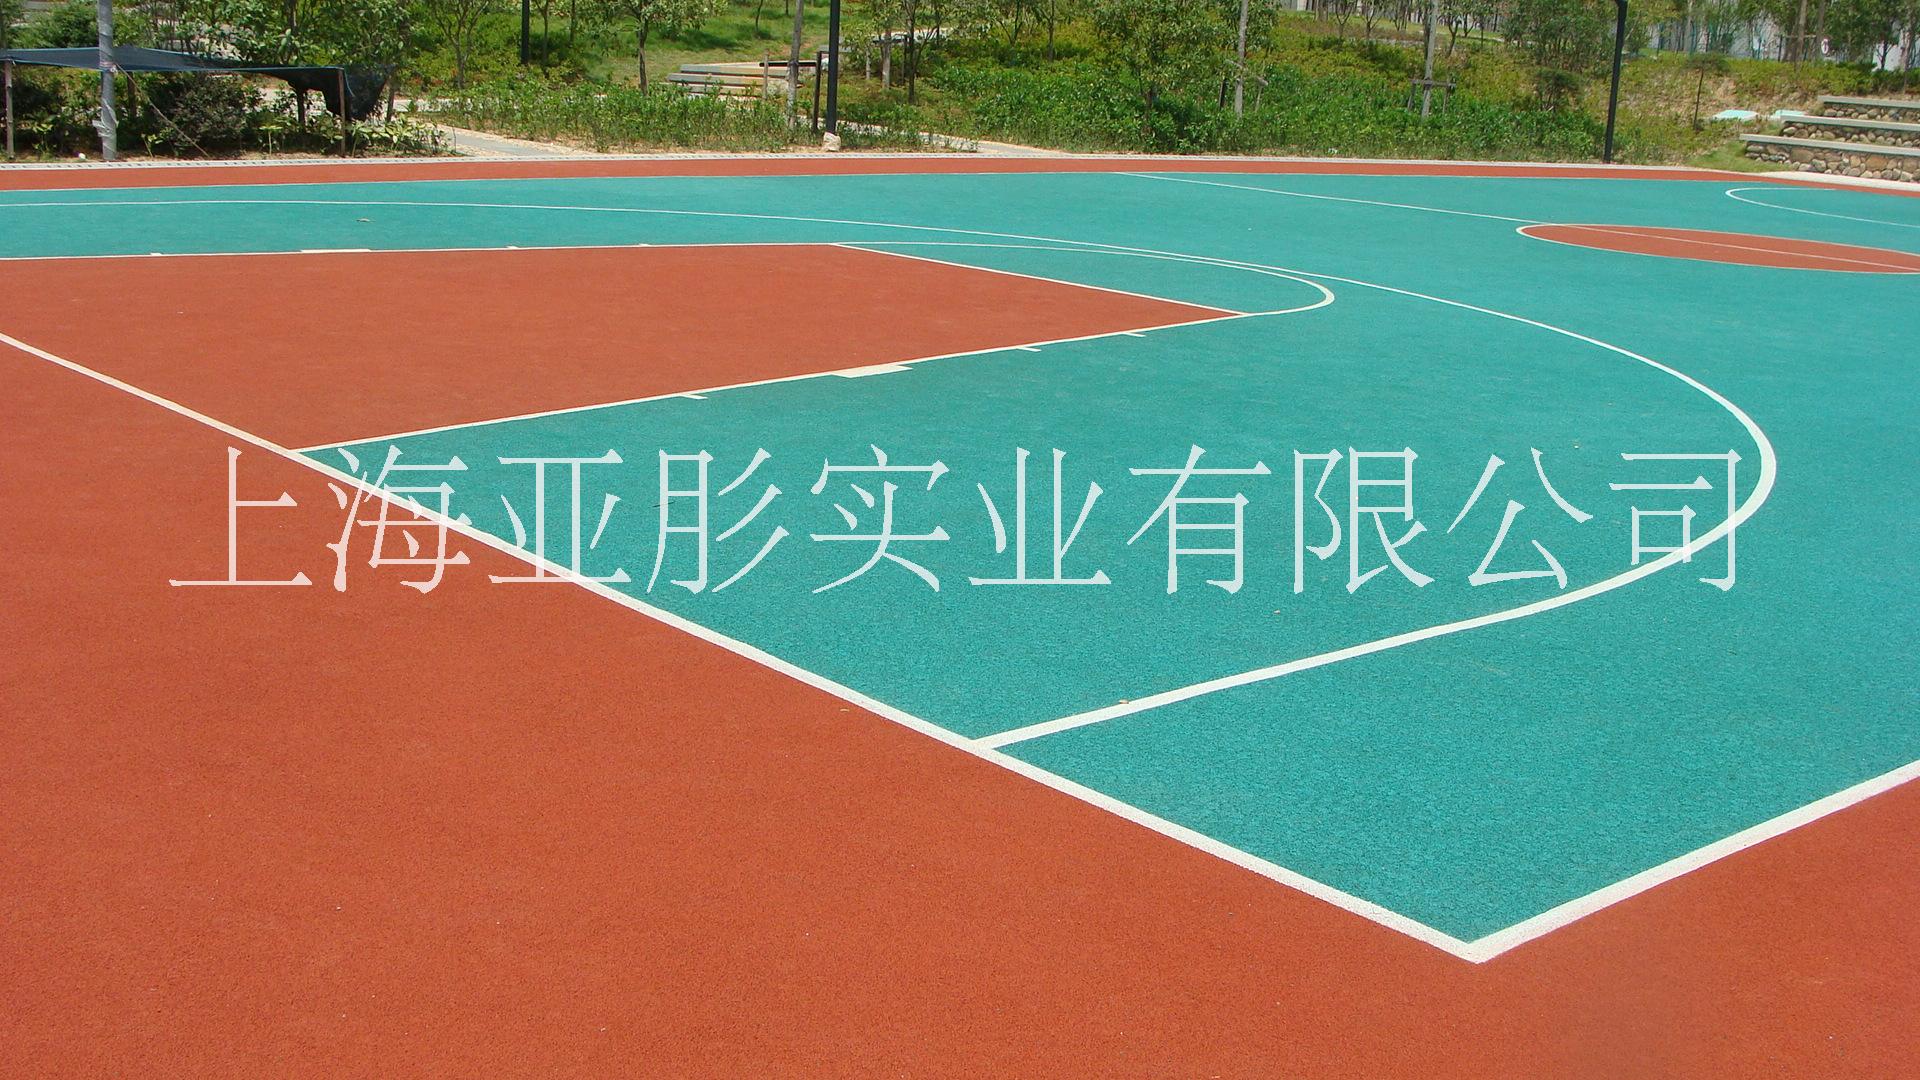 塑胶球场   上海塑胶篮球场